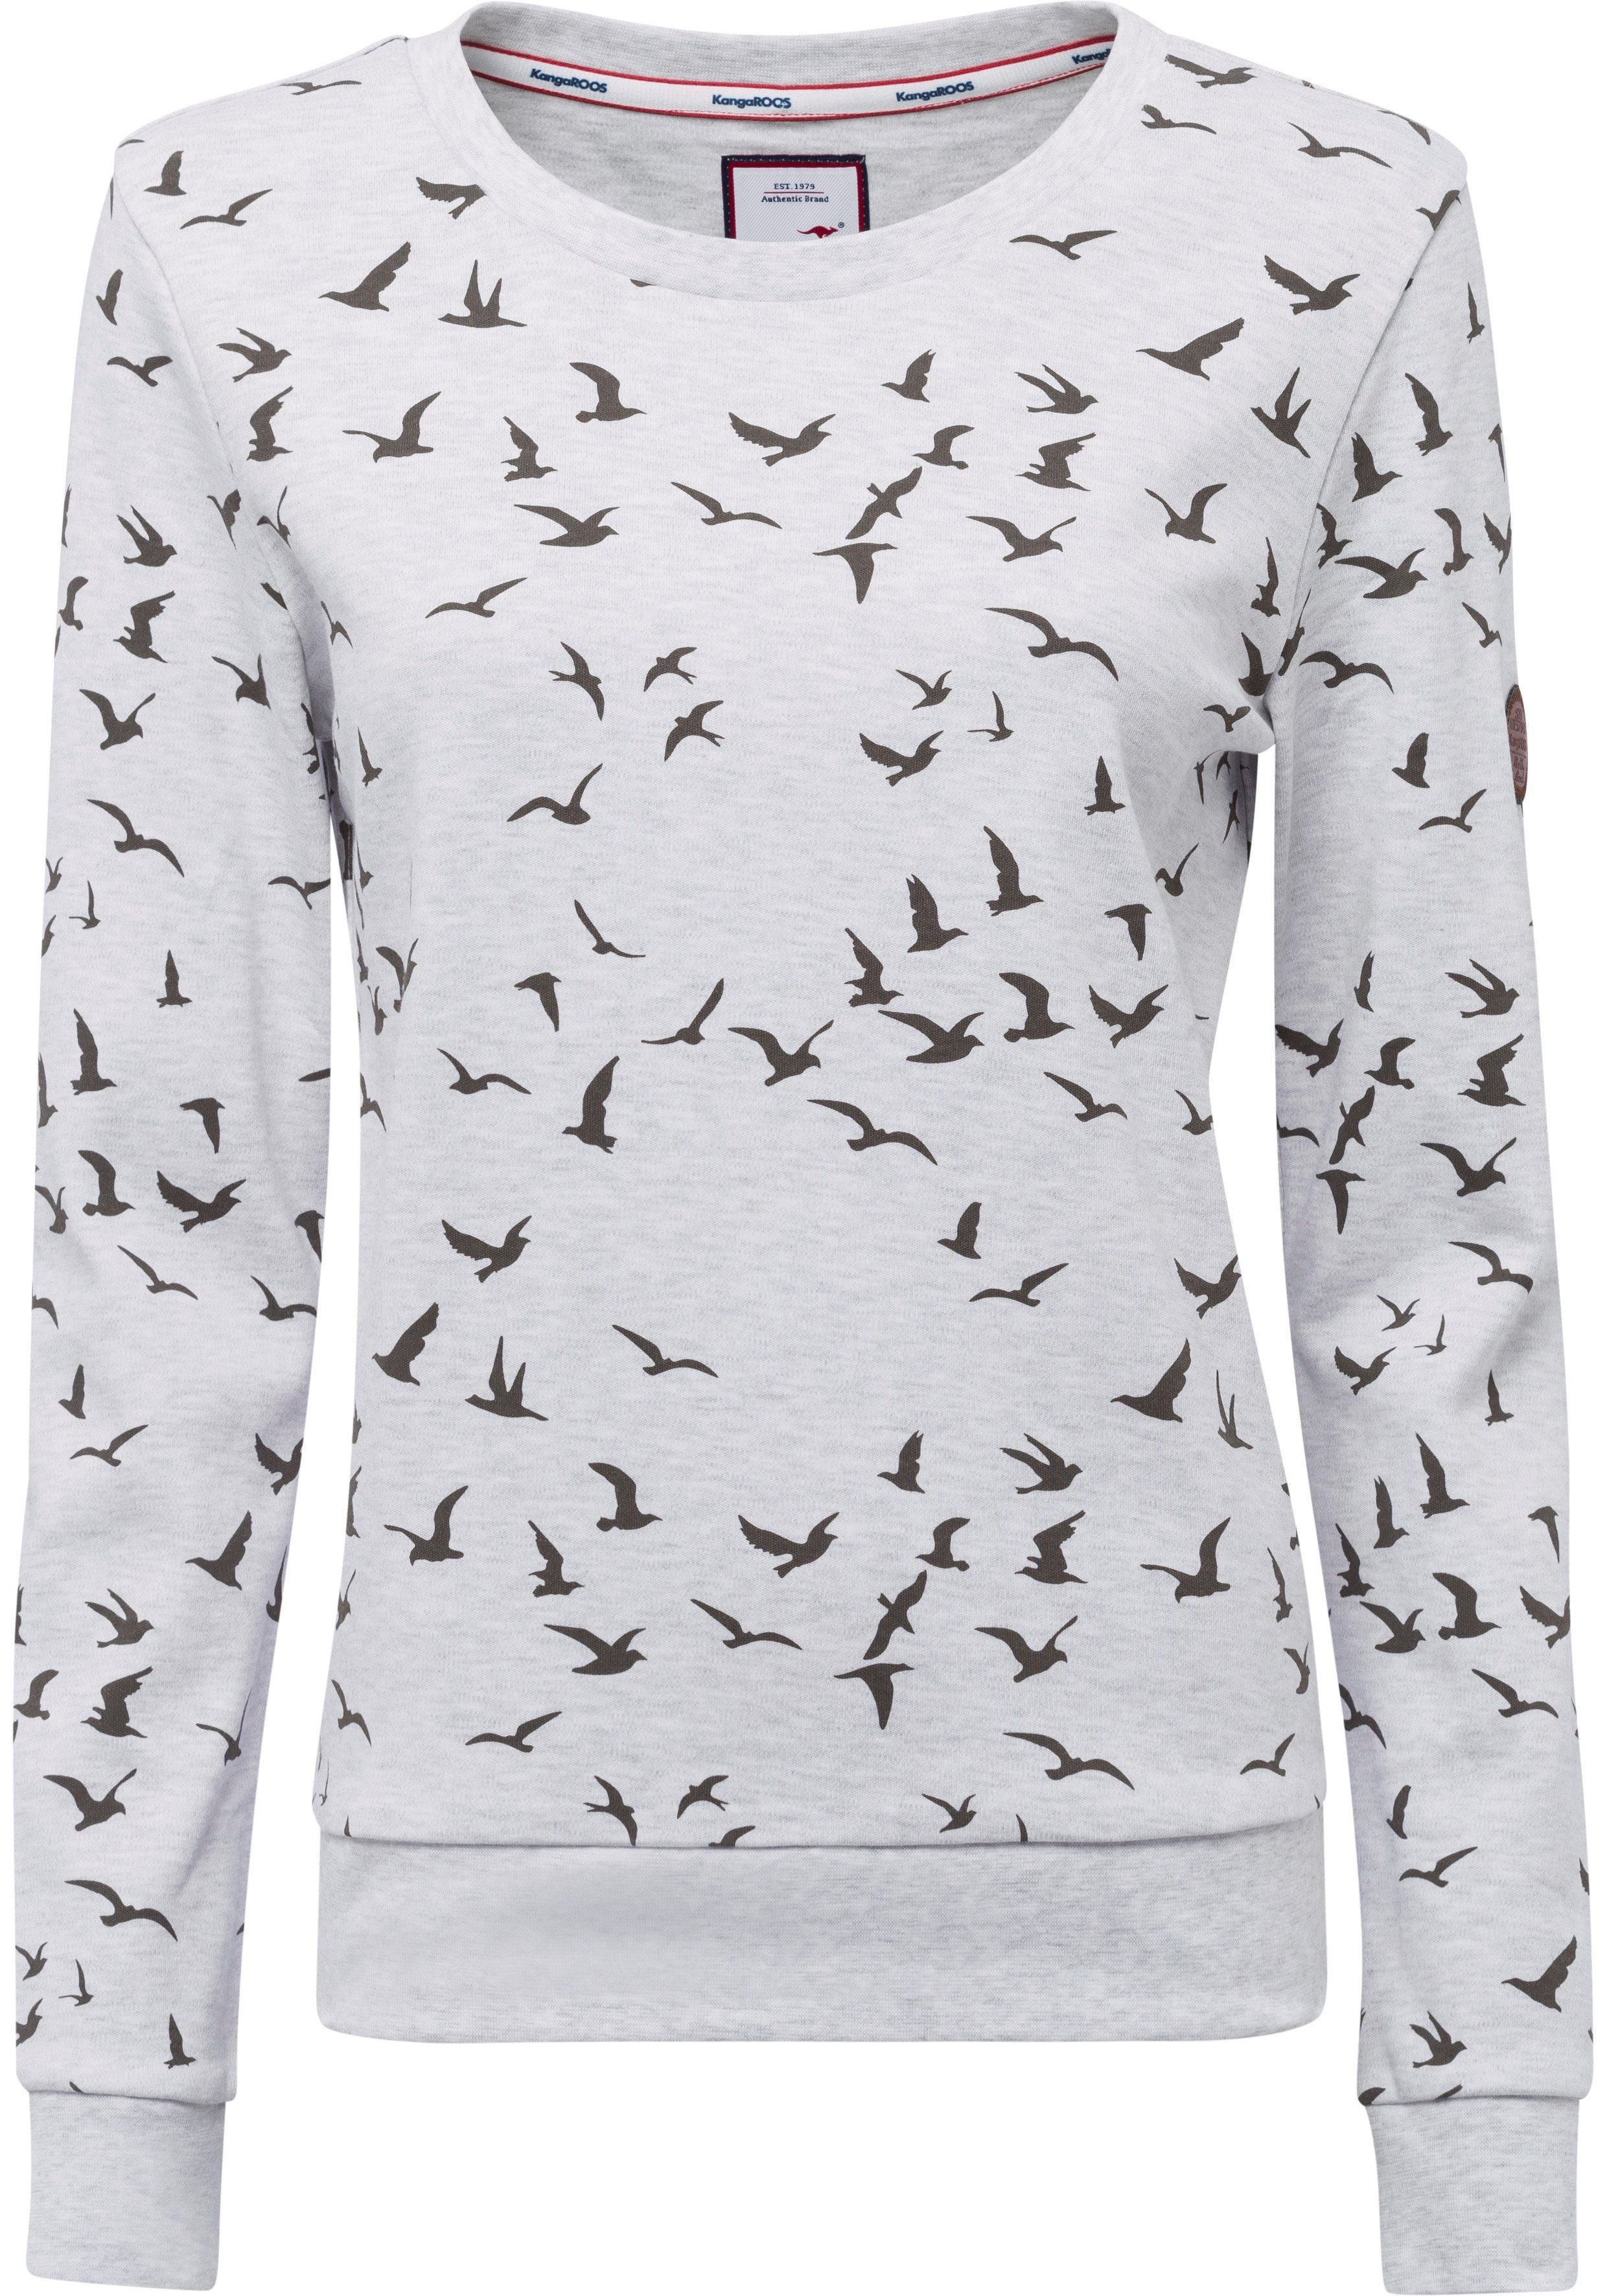 Minimal-Allover-Print Sweatshirt ecru-meliert KangaROOS modischem mit